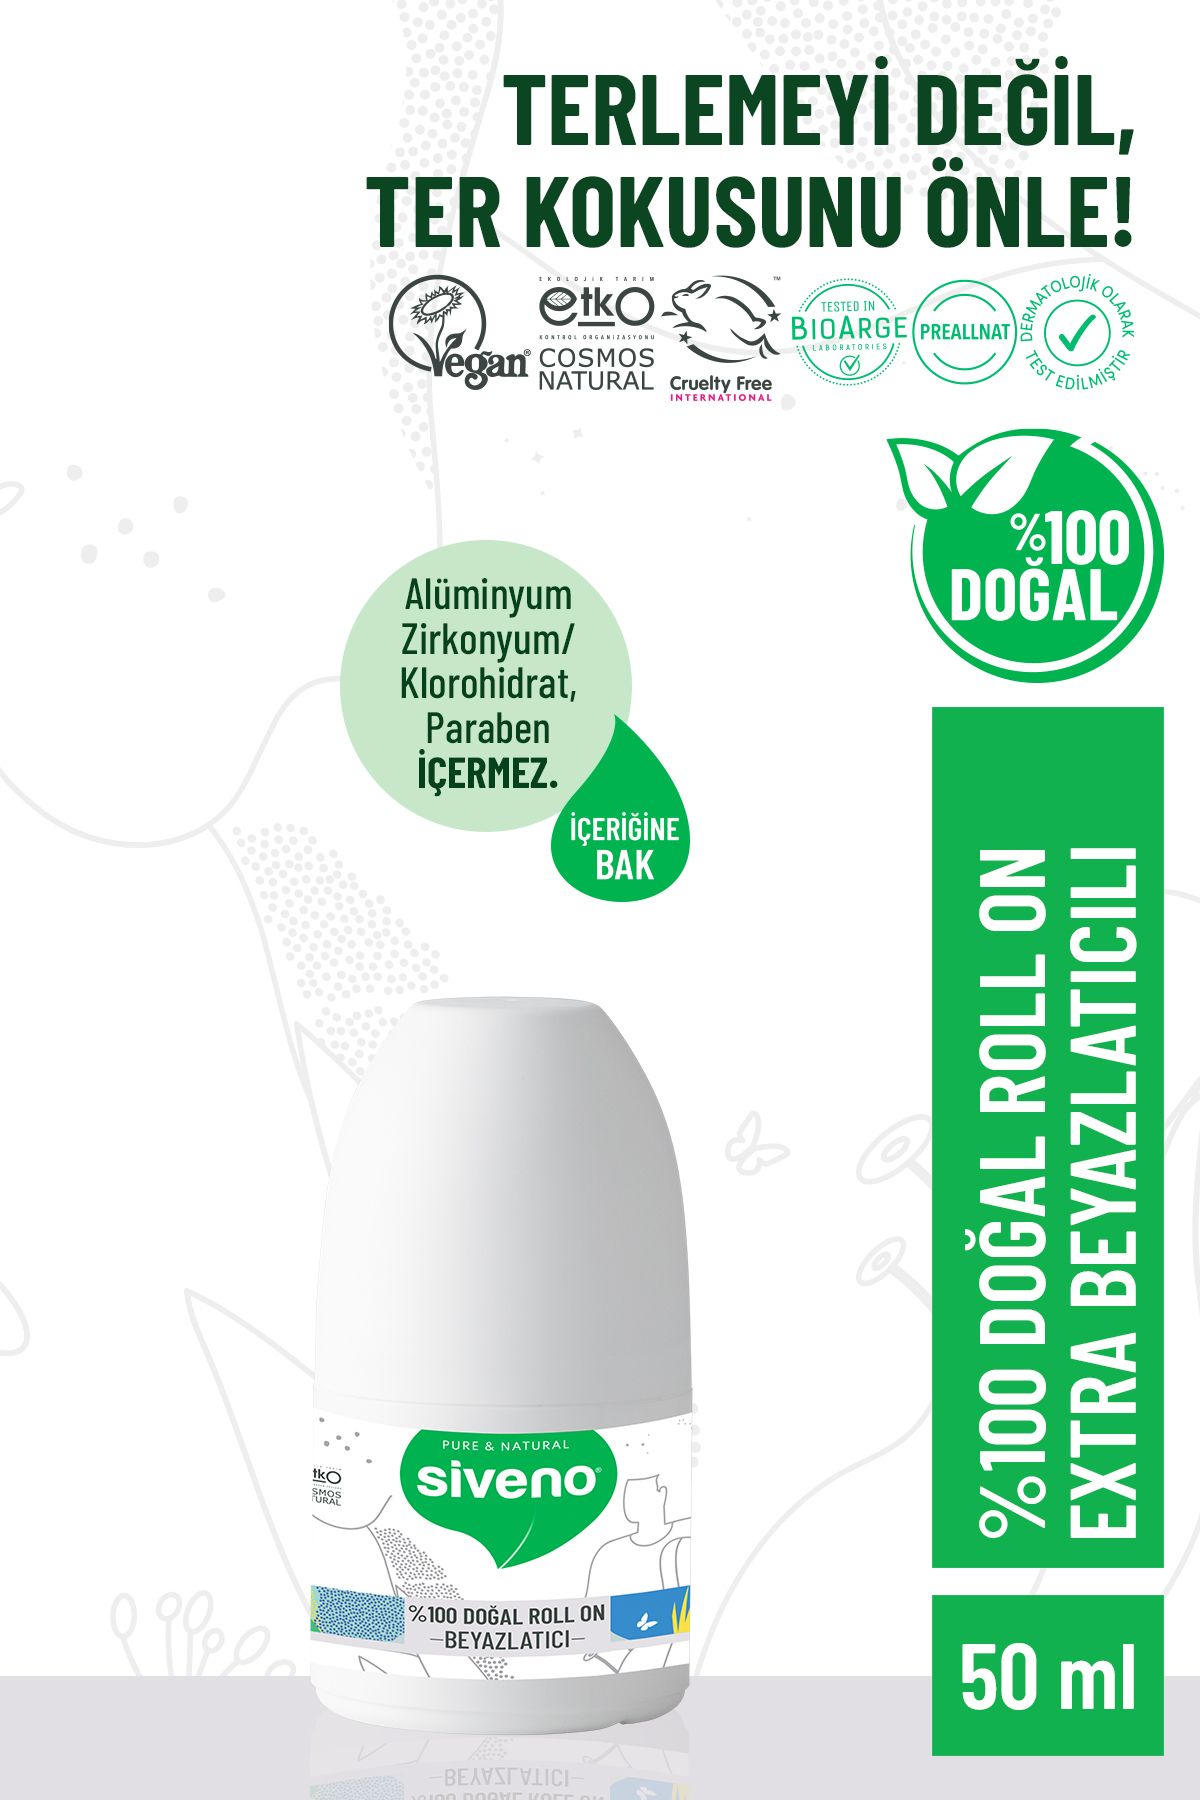 Siveno %100 Doğal Roll-on Beyazlatıcı Etkili Deodorant Ter Kokusu Önleyici Bitkisel Lekesiz Vegan 50 ml